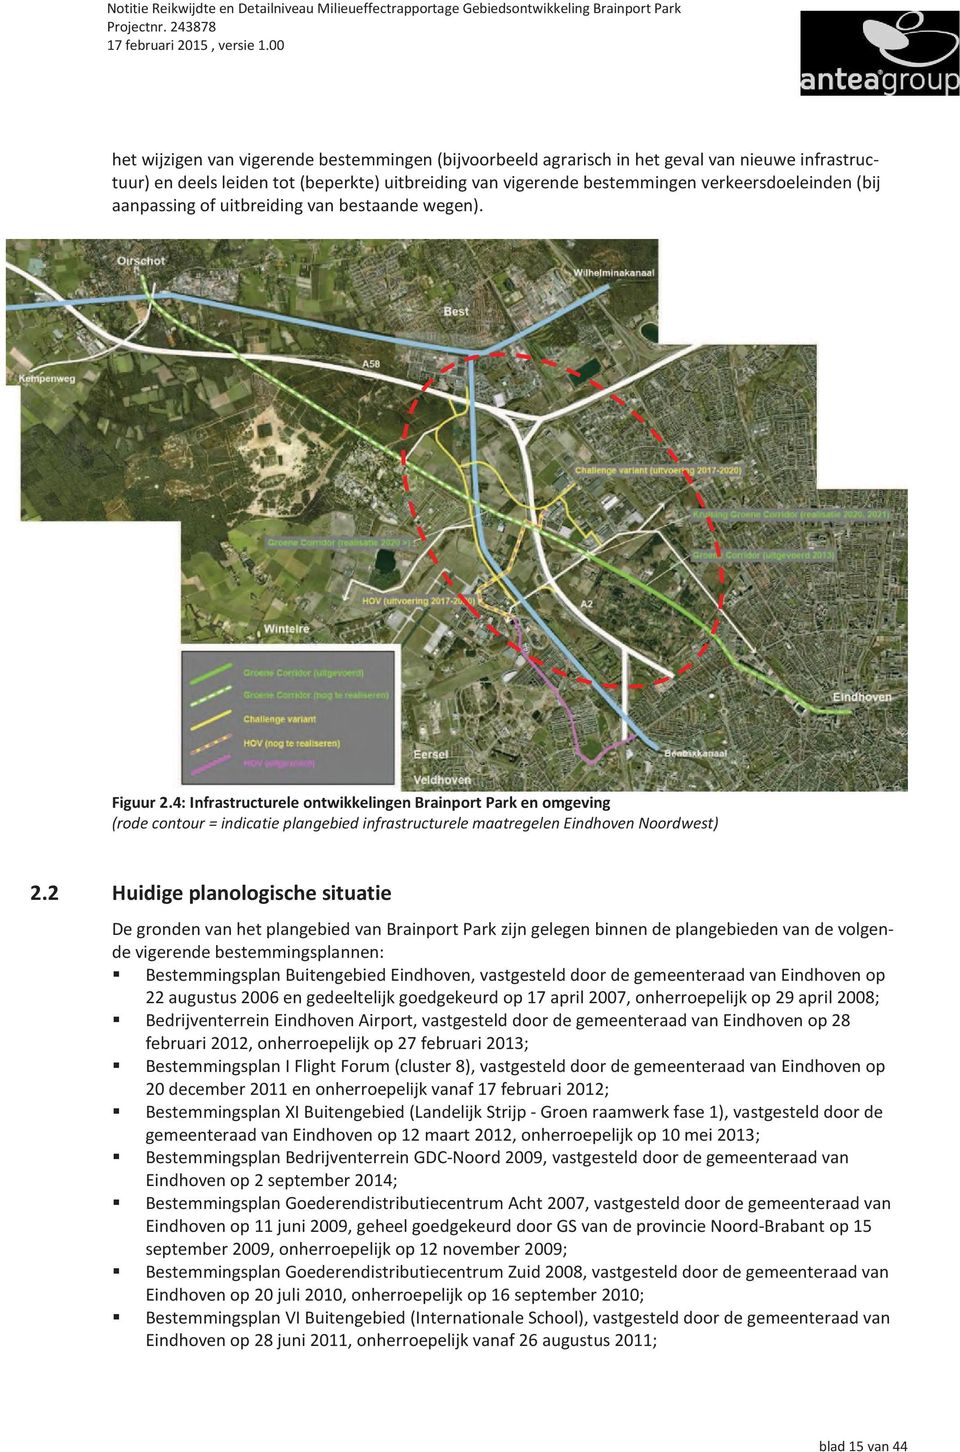 4: Infrastructurele ontwikkelingen Brainport Park en omgeving (rode contour = indicatie plangebied infrastructurele maatregelen Eindhoven Noordwest) 2.